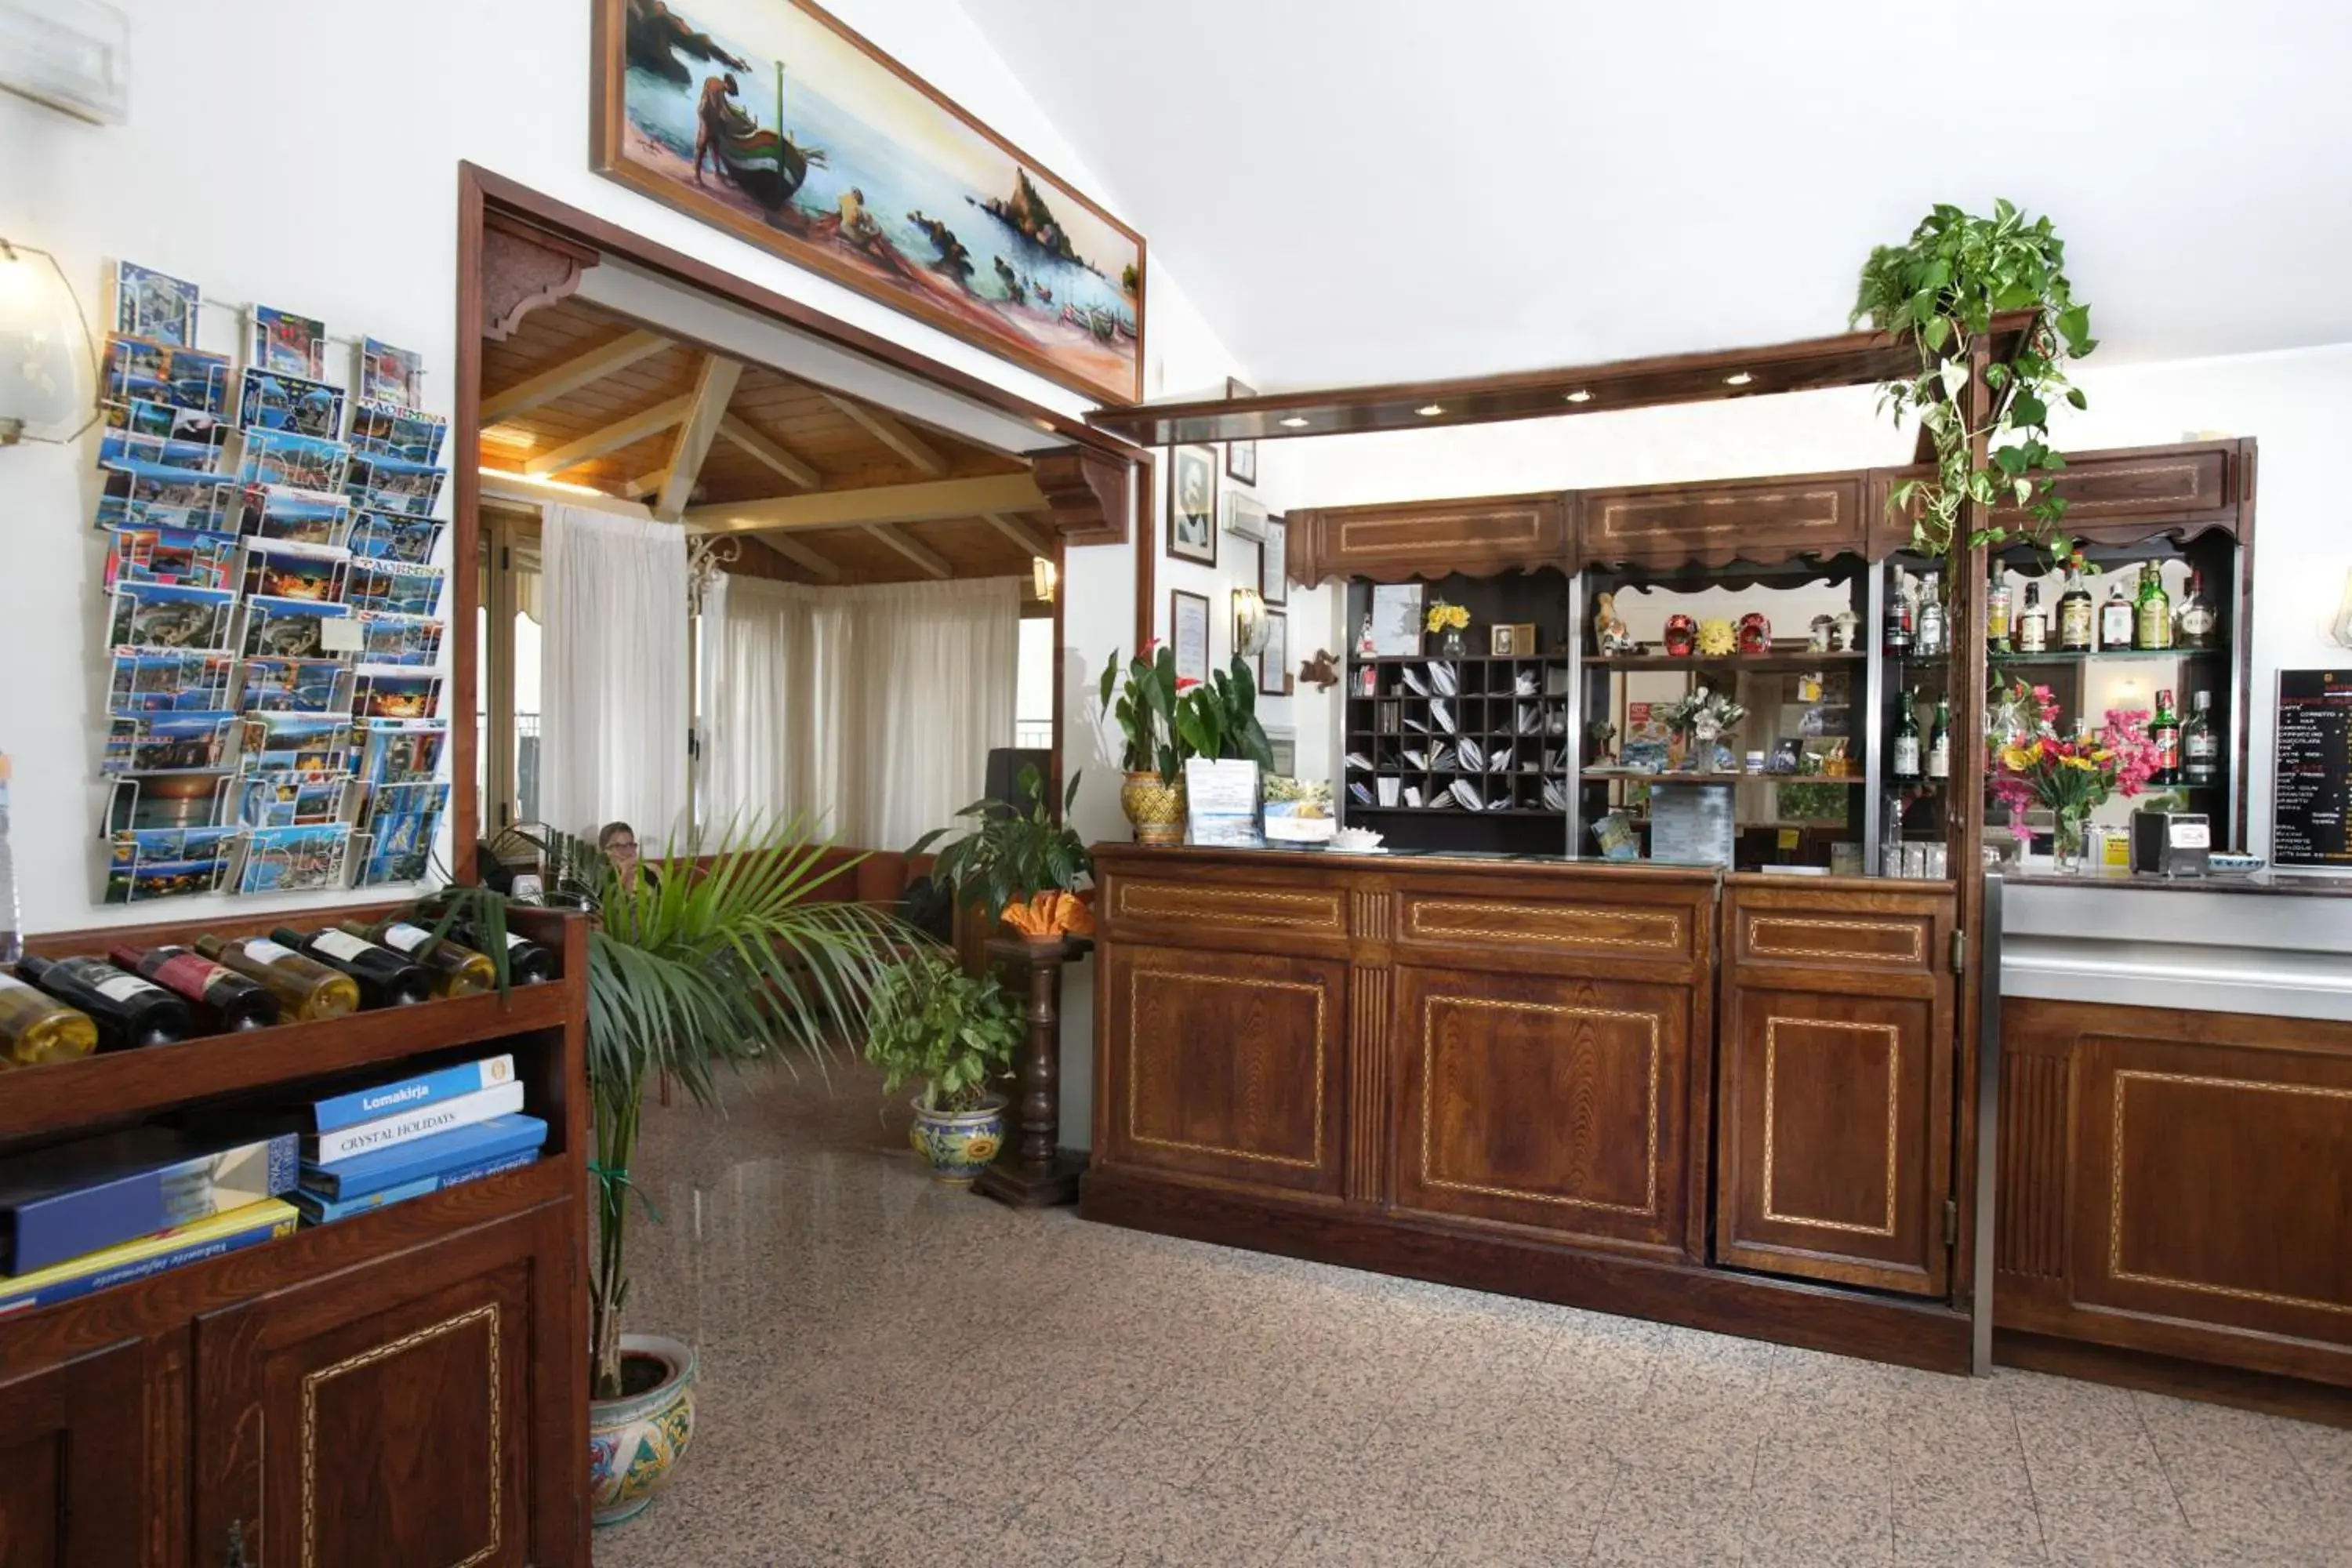 Lobby or reception in Hotel Soleado